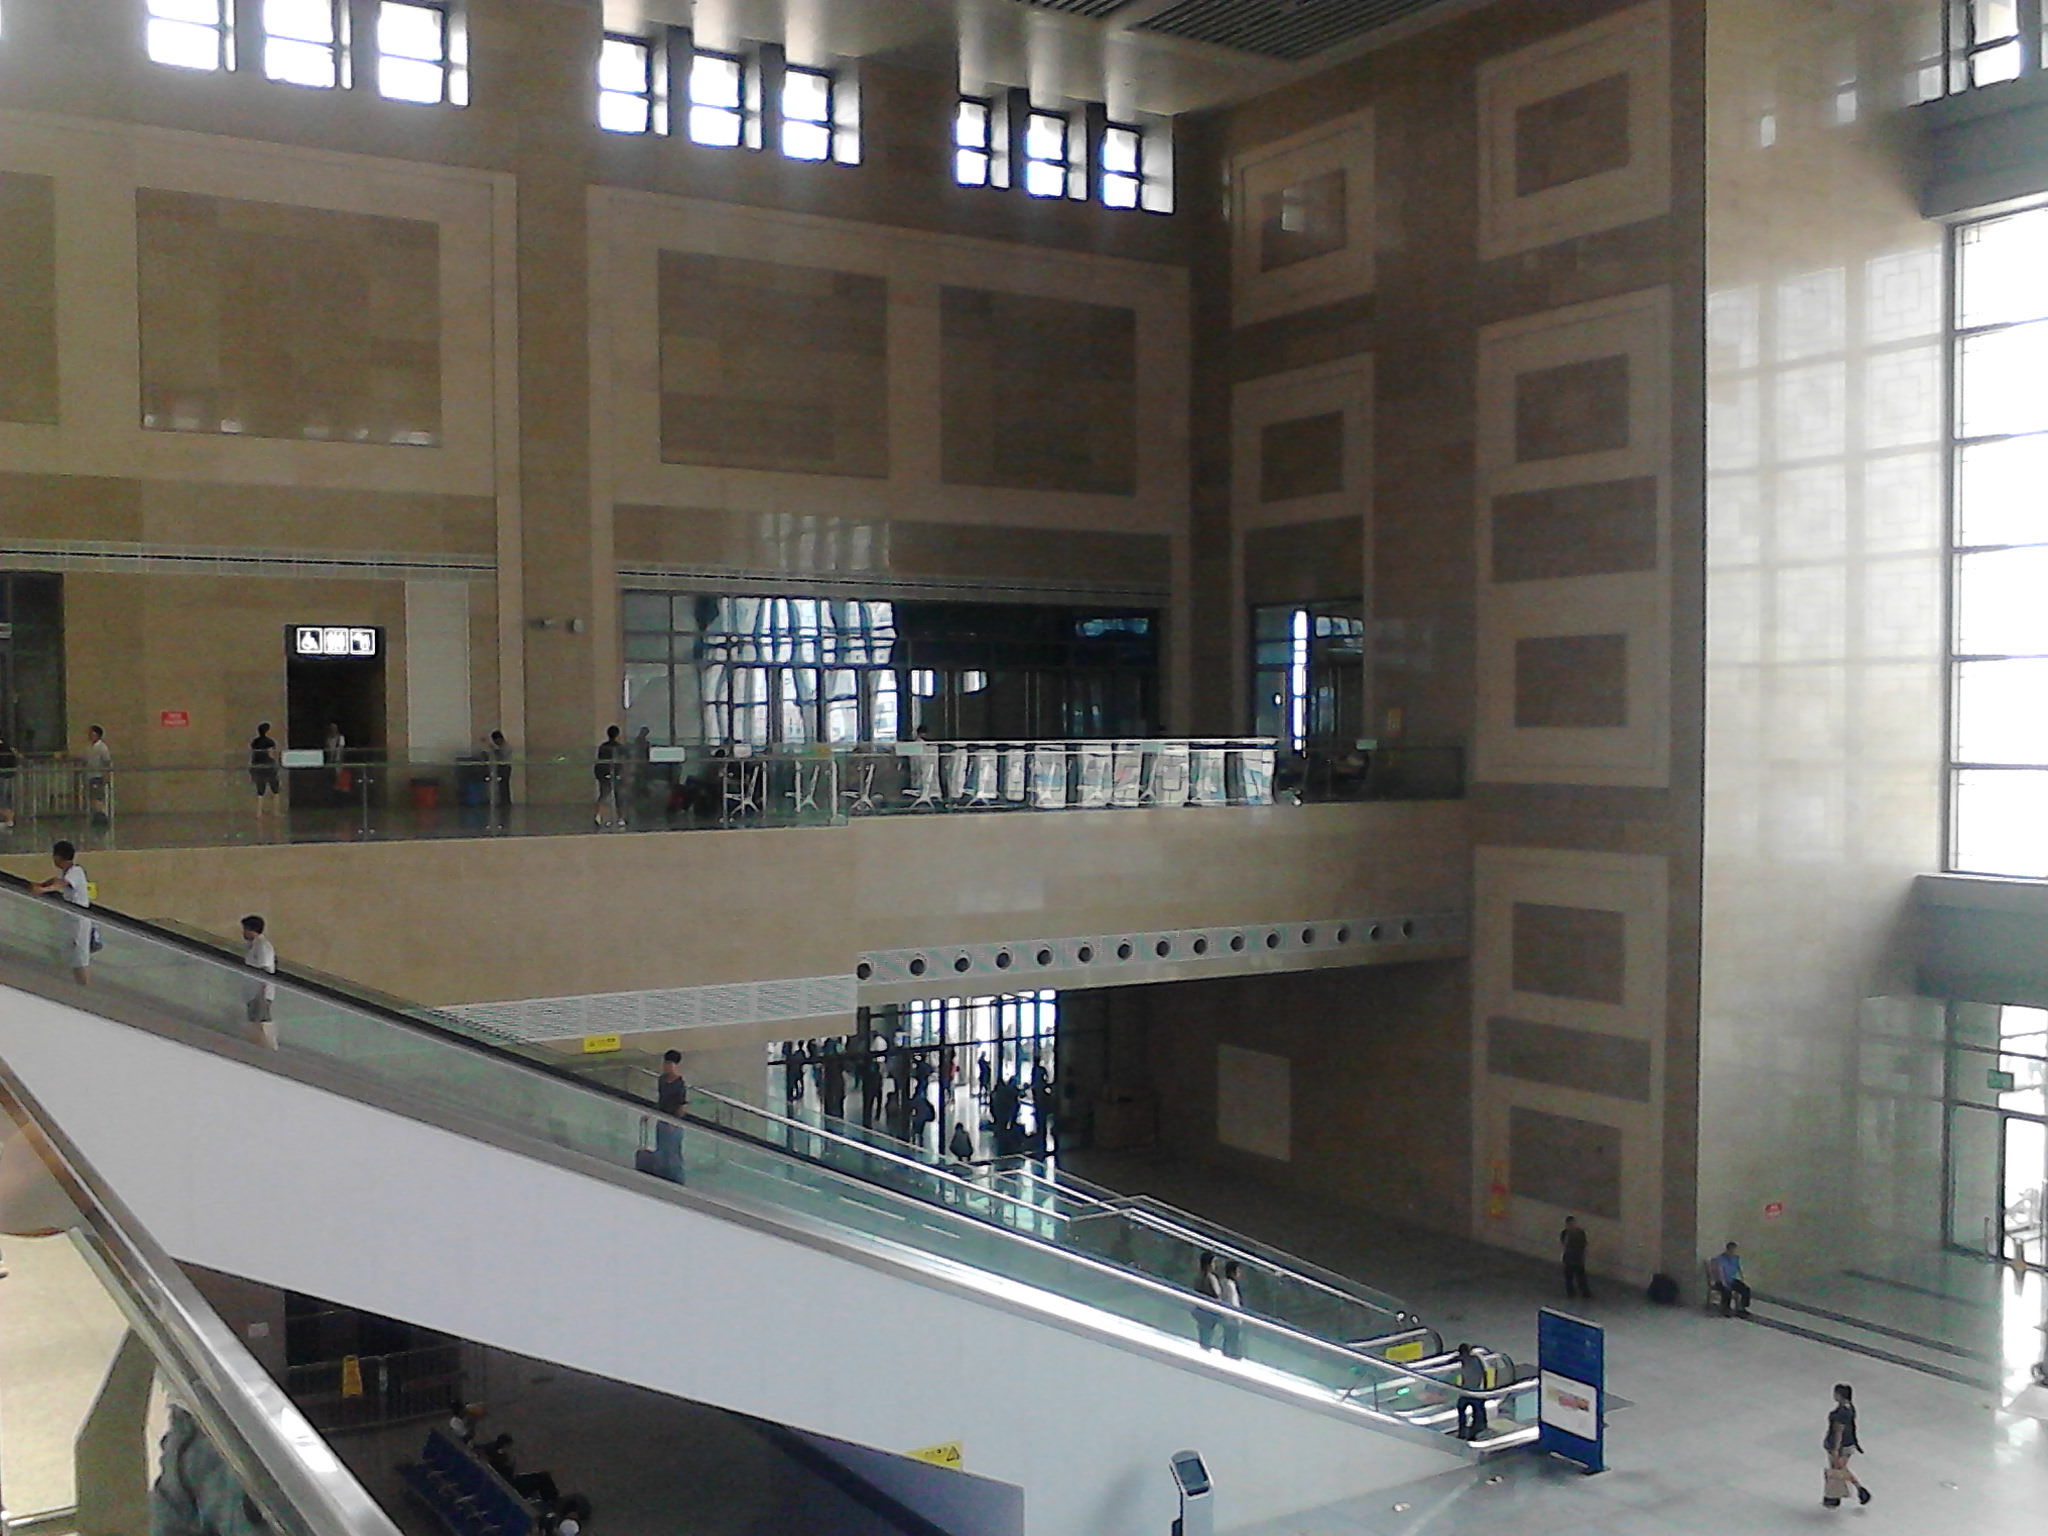 保定火车站扩建改造一期工程(西站房)已经完工,2012年12月29日0:30